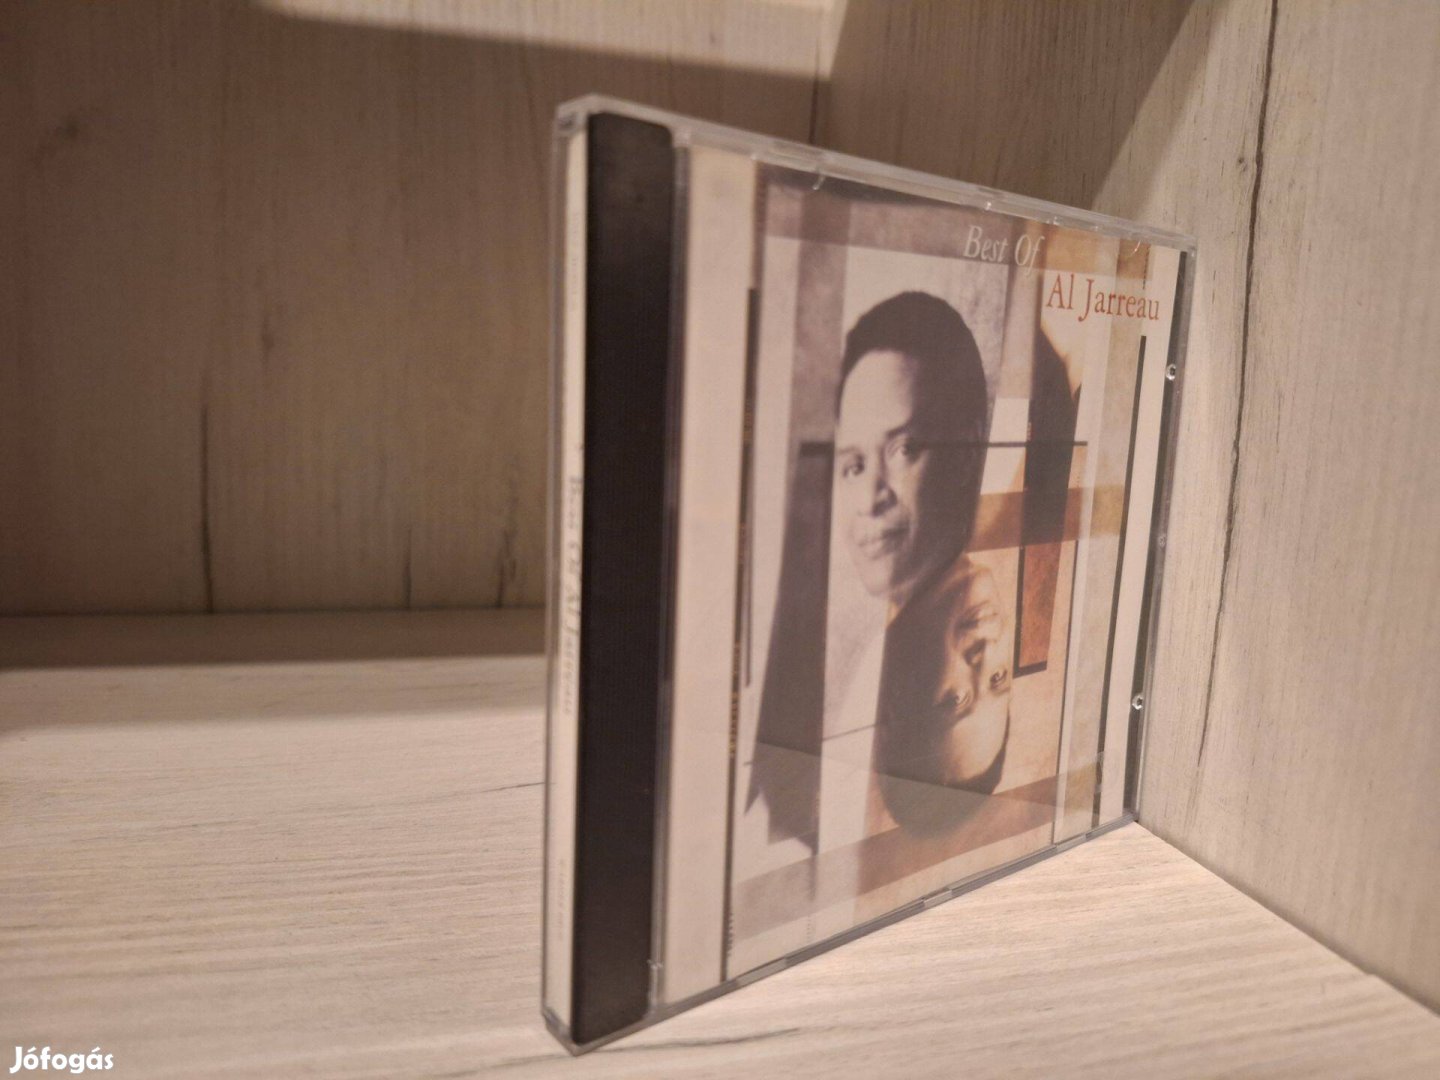 Al Jarreau - Best Of Al Jarreau CD